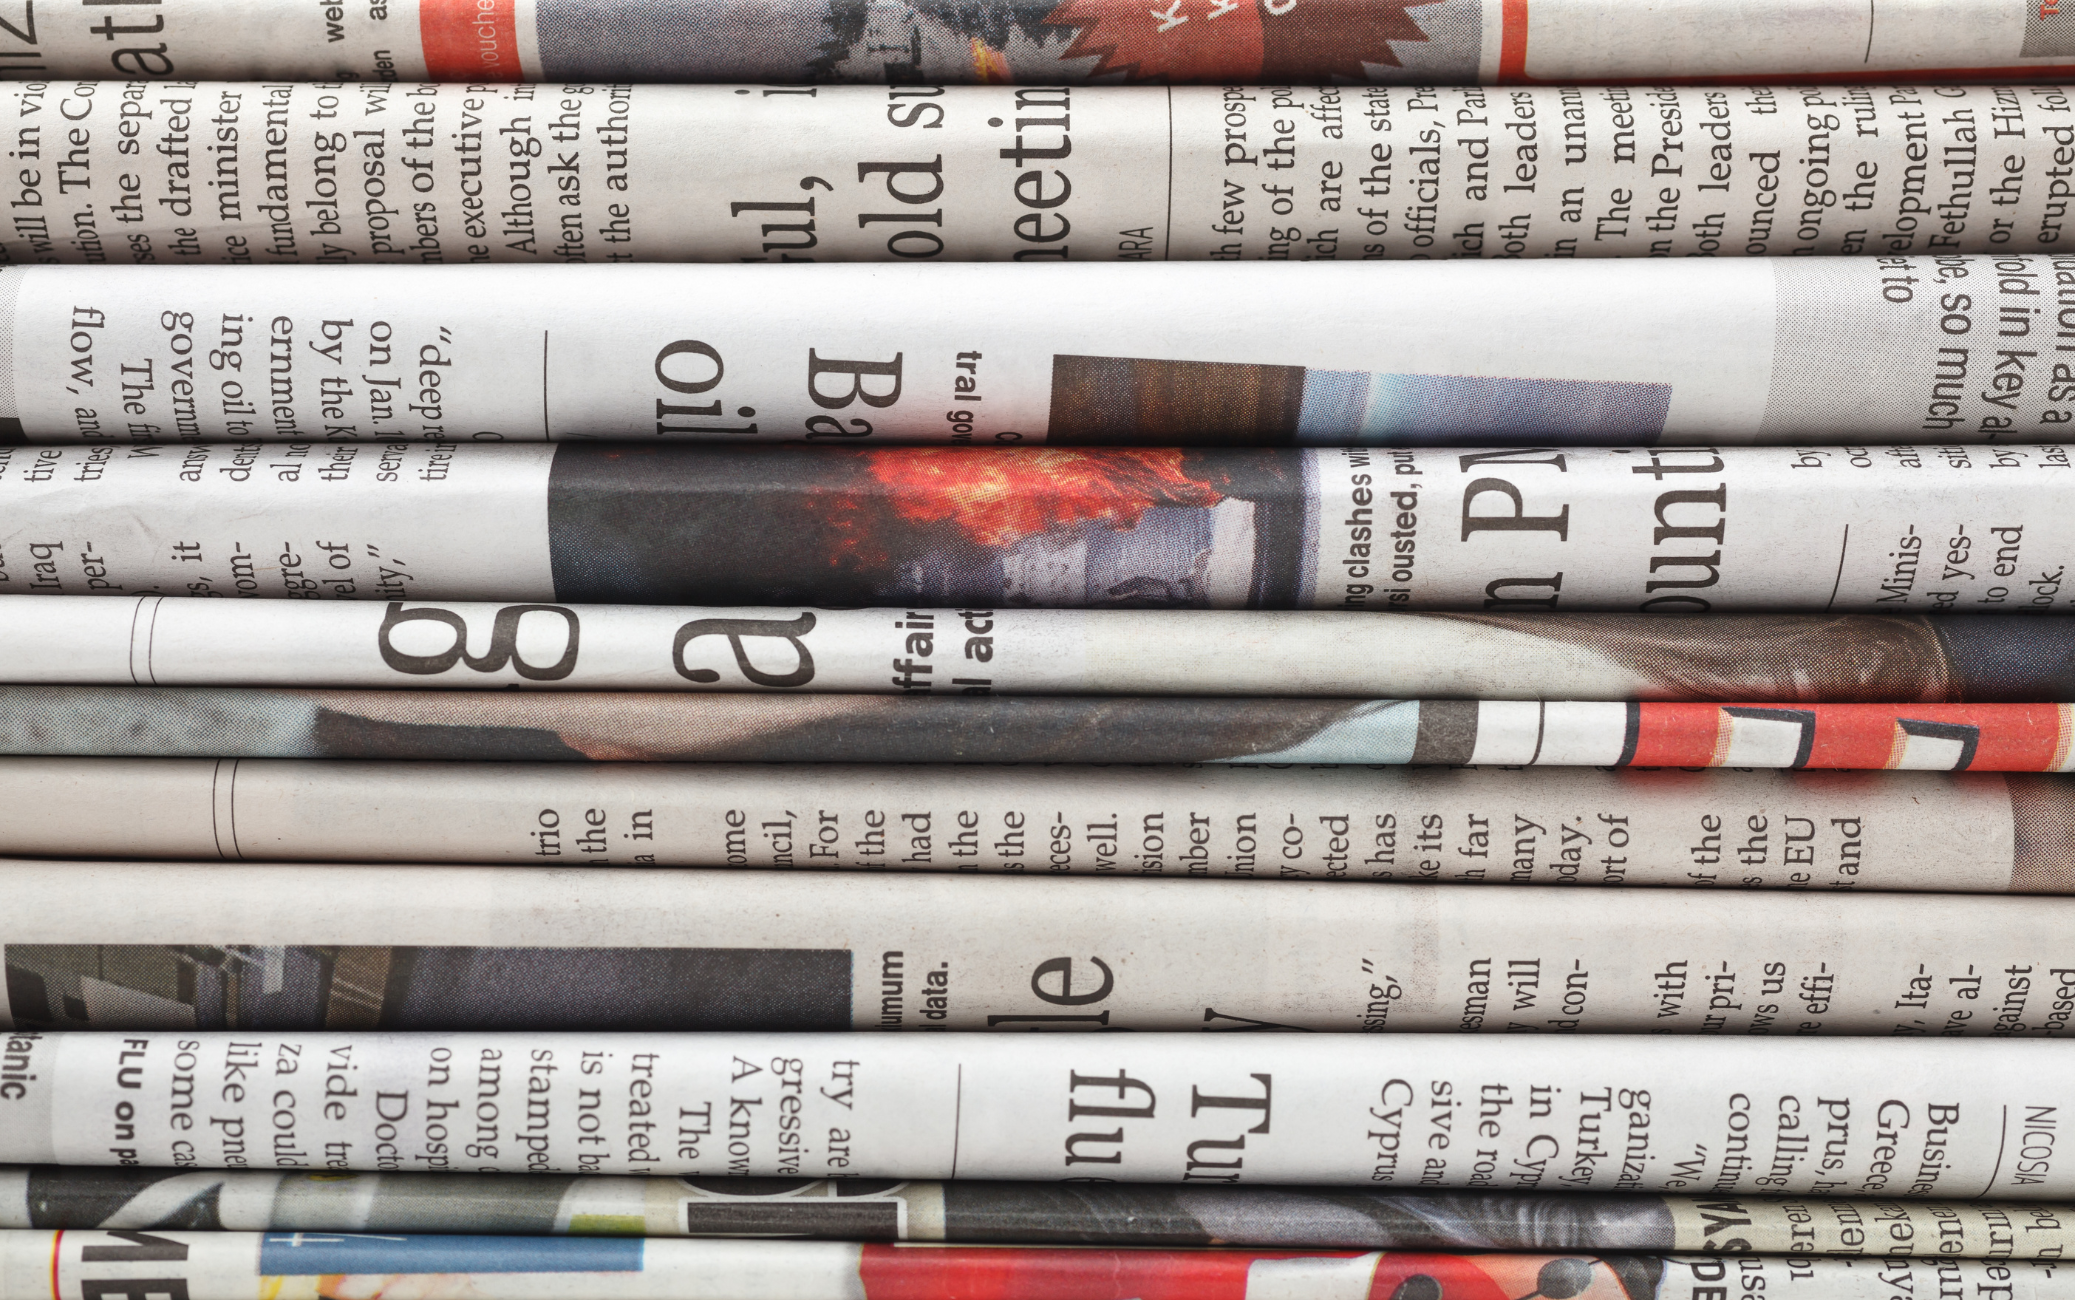 Pile de journaux vue côté tranche, pour symboliser la régularité des contenus éditoriaux, qui se construisent jour après jour